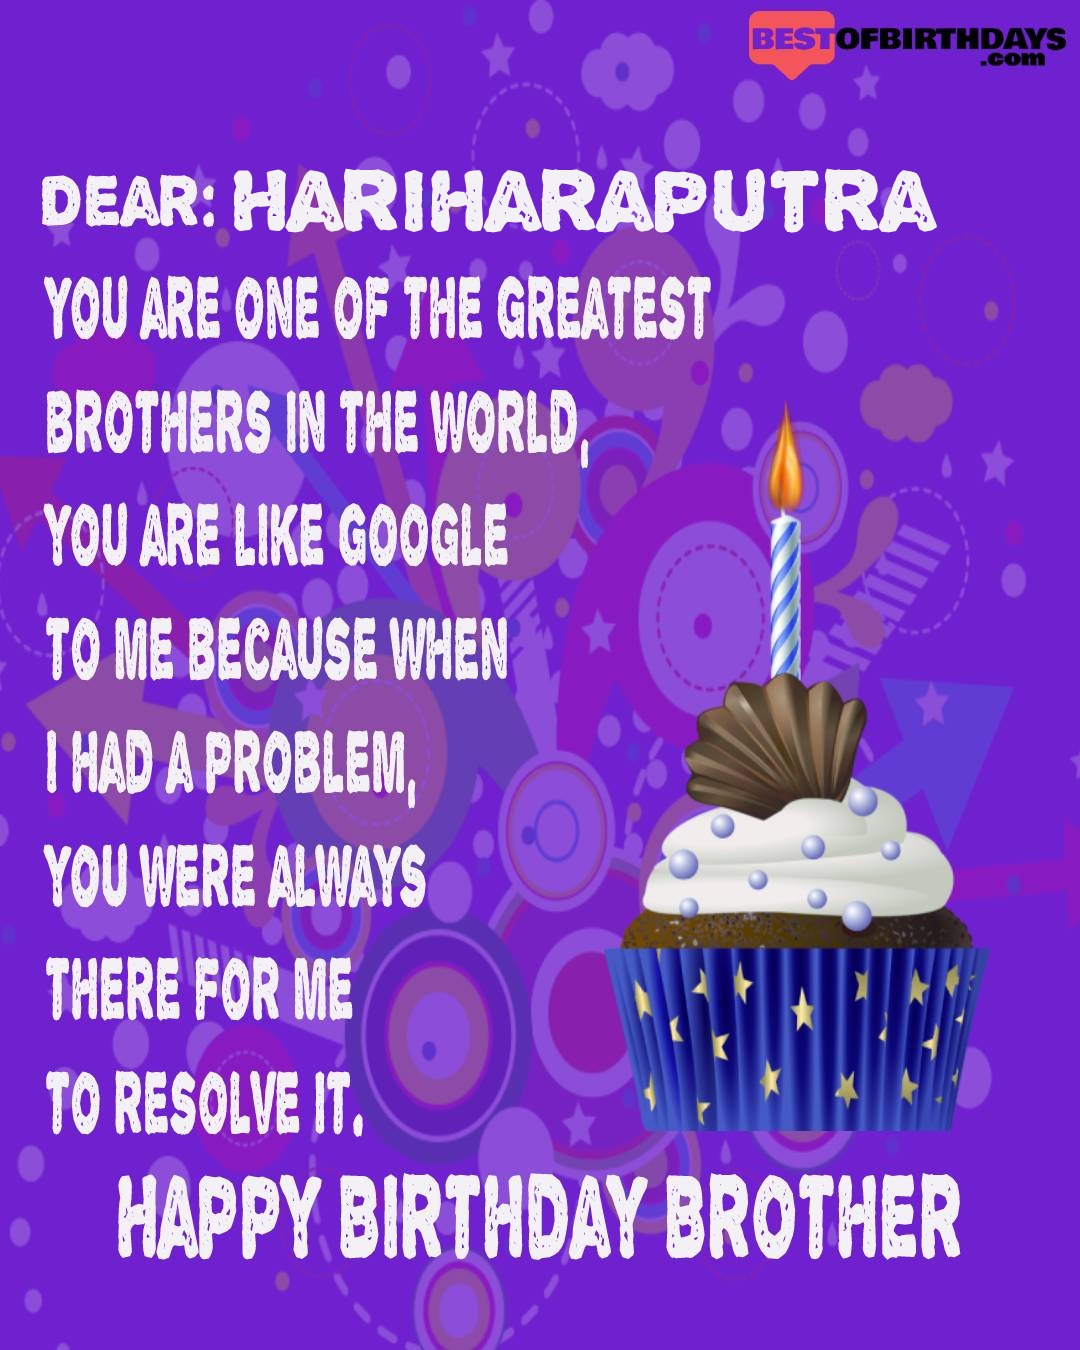 Happy birthday hariharaputra bhai brother bro